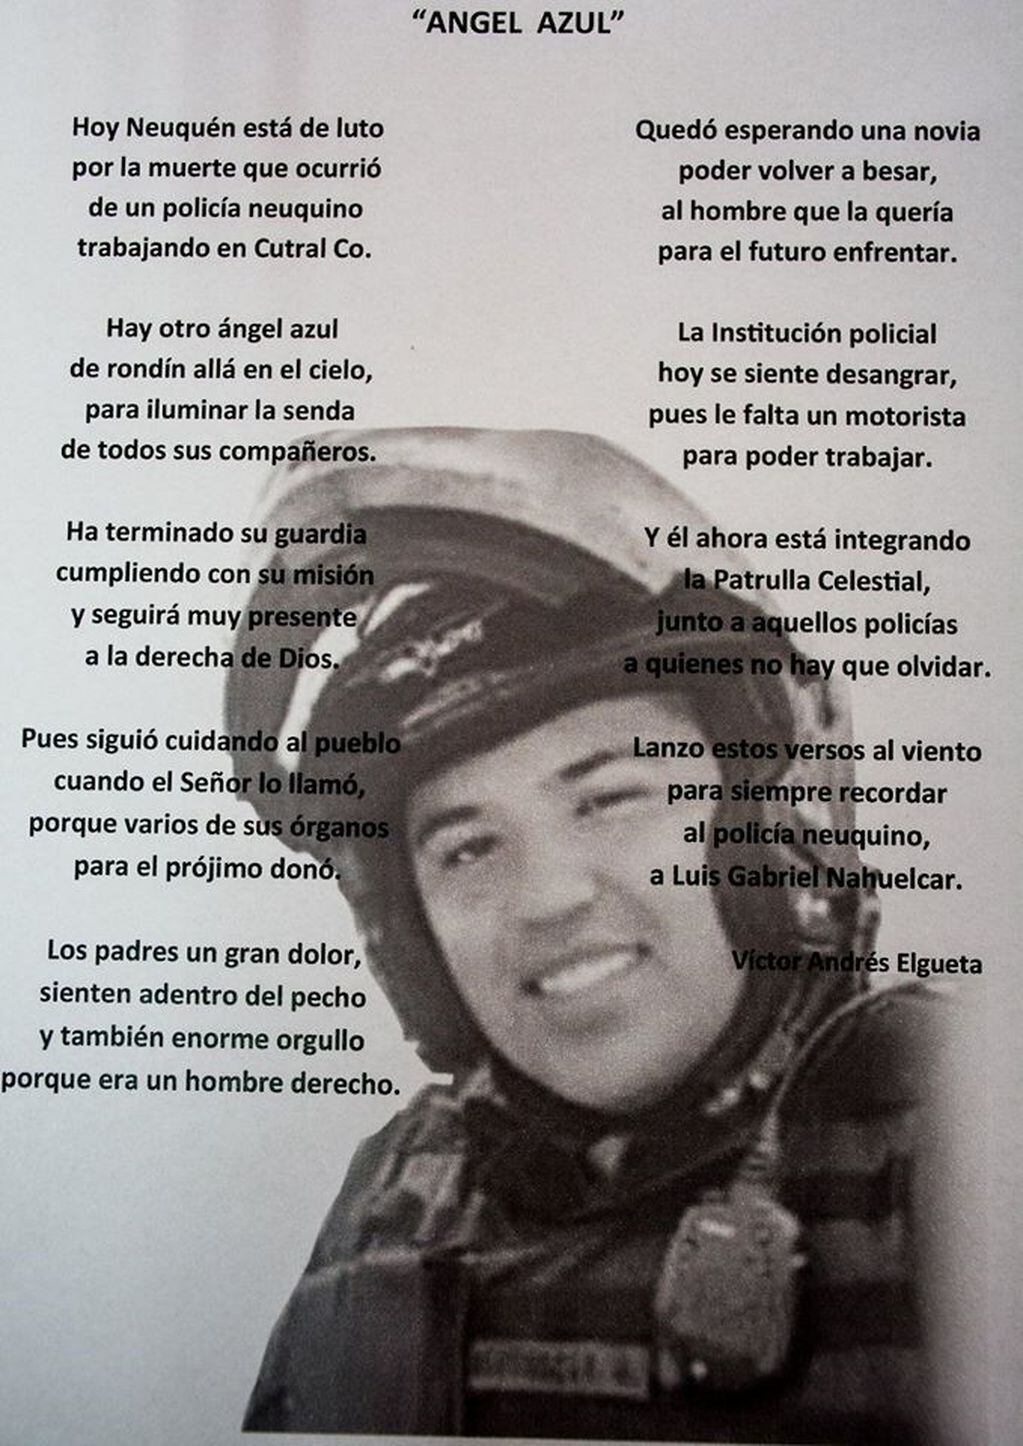 El poema en homenaje a Luis Gabriel Nahuelcar (web).